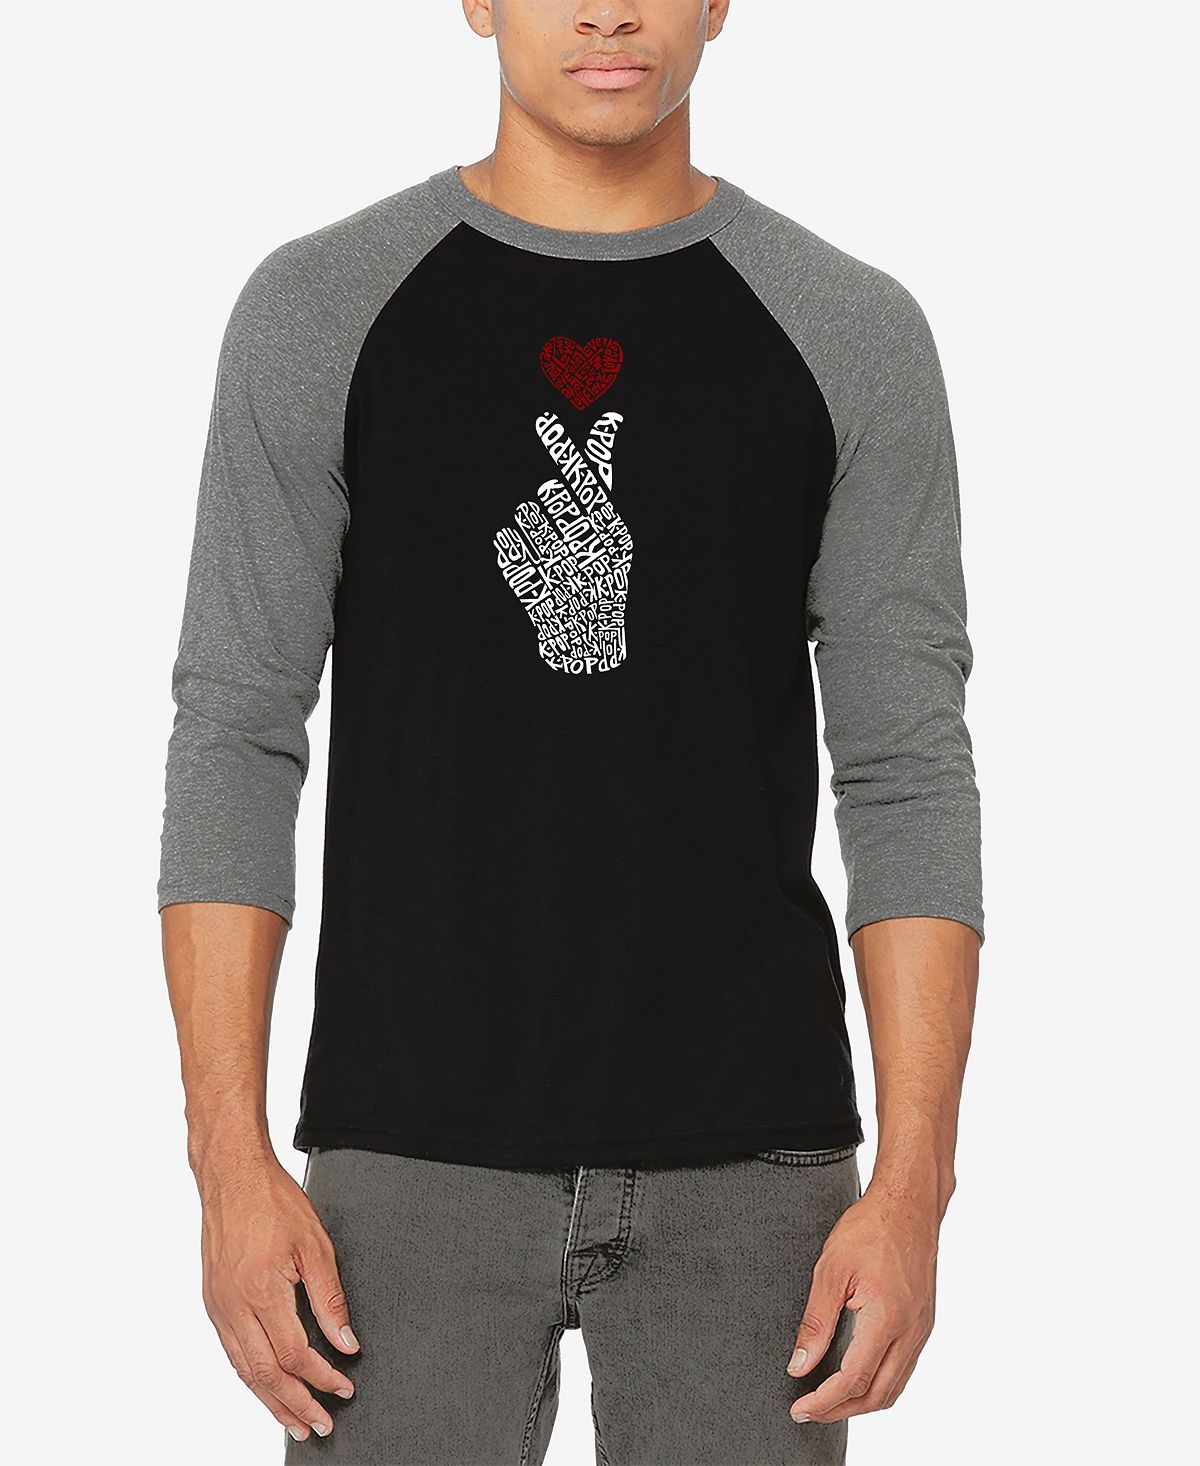 цена Мужская бейсбольная футболка реглан с рукавом 3/4 k-pop word art футболка LA Pop Art, мульти